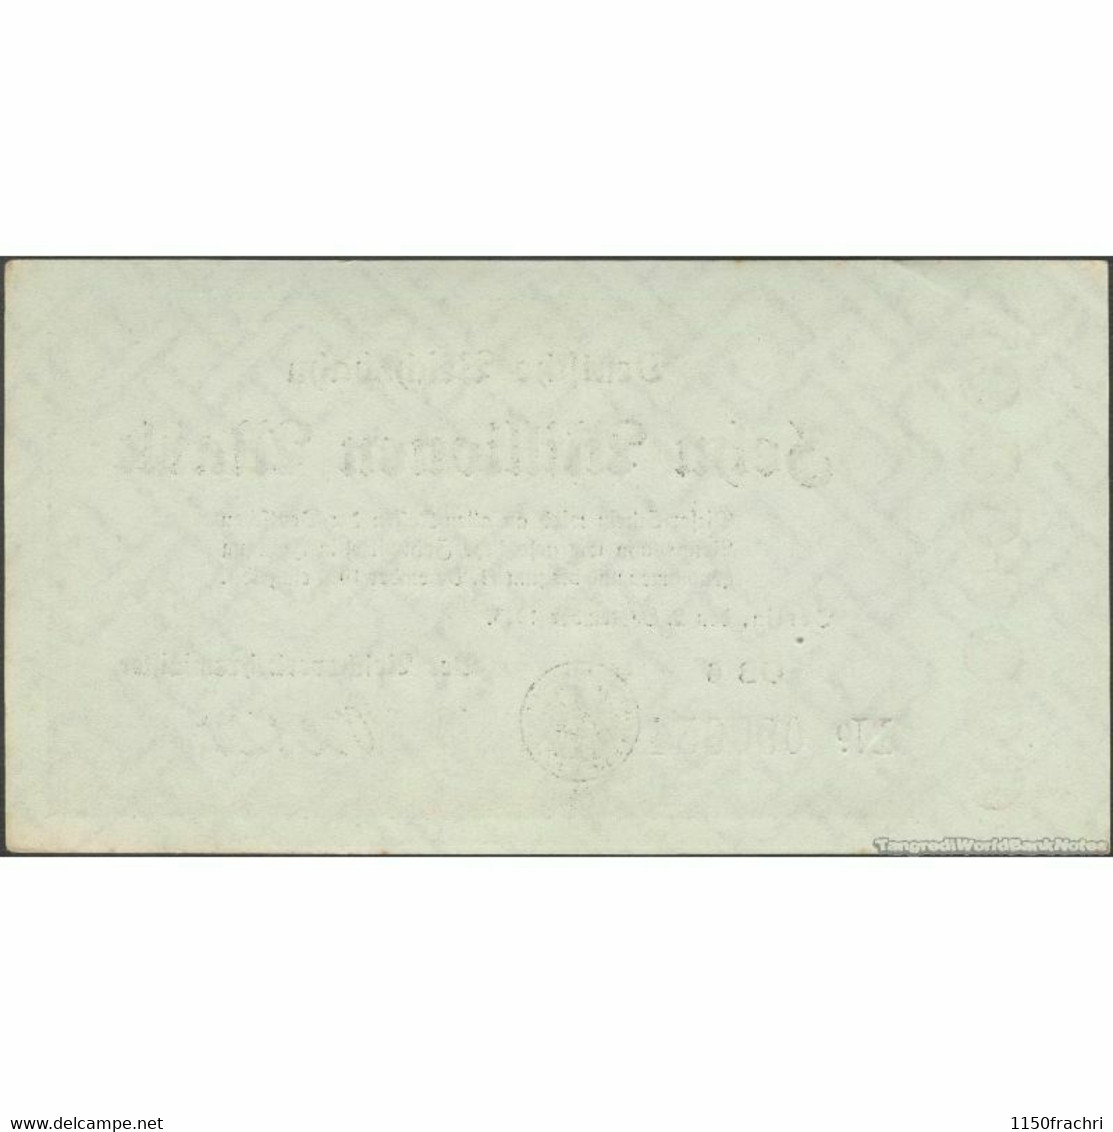 Banknote - Deutsche Reichsbahn 1923 - 10 Millionen Mark - 10 Miljoen Mark